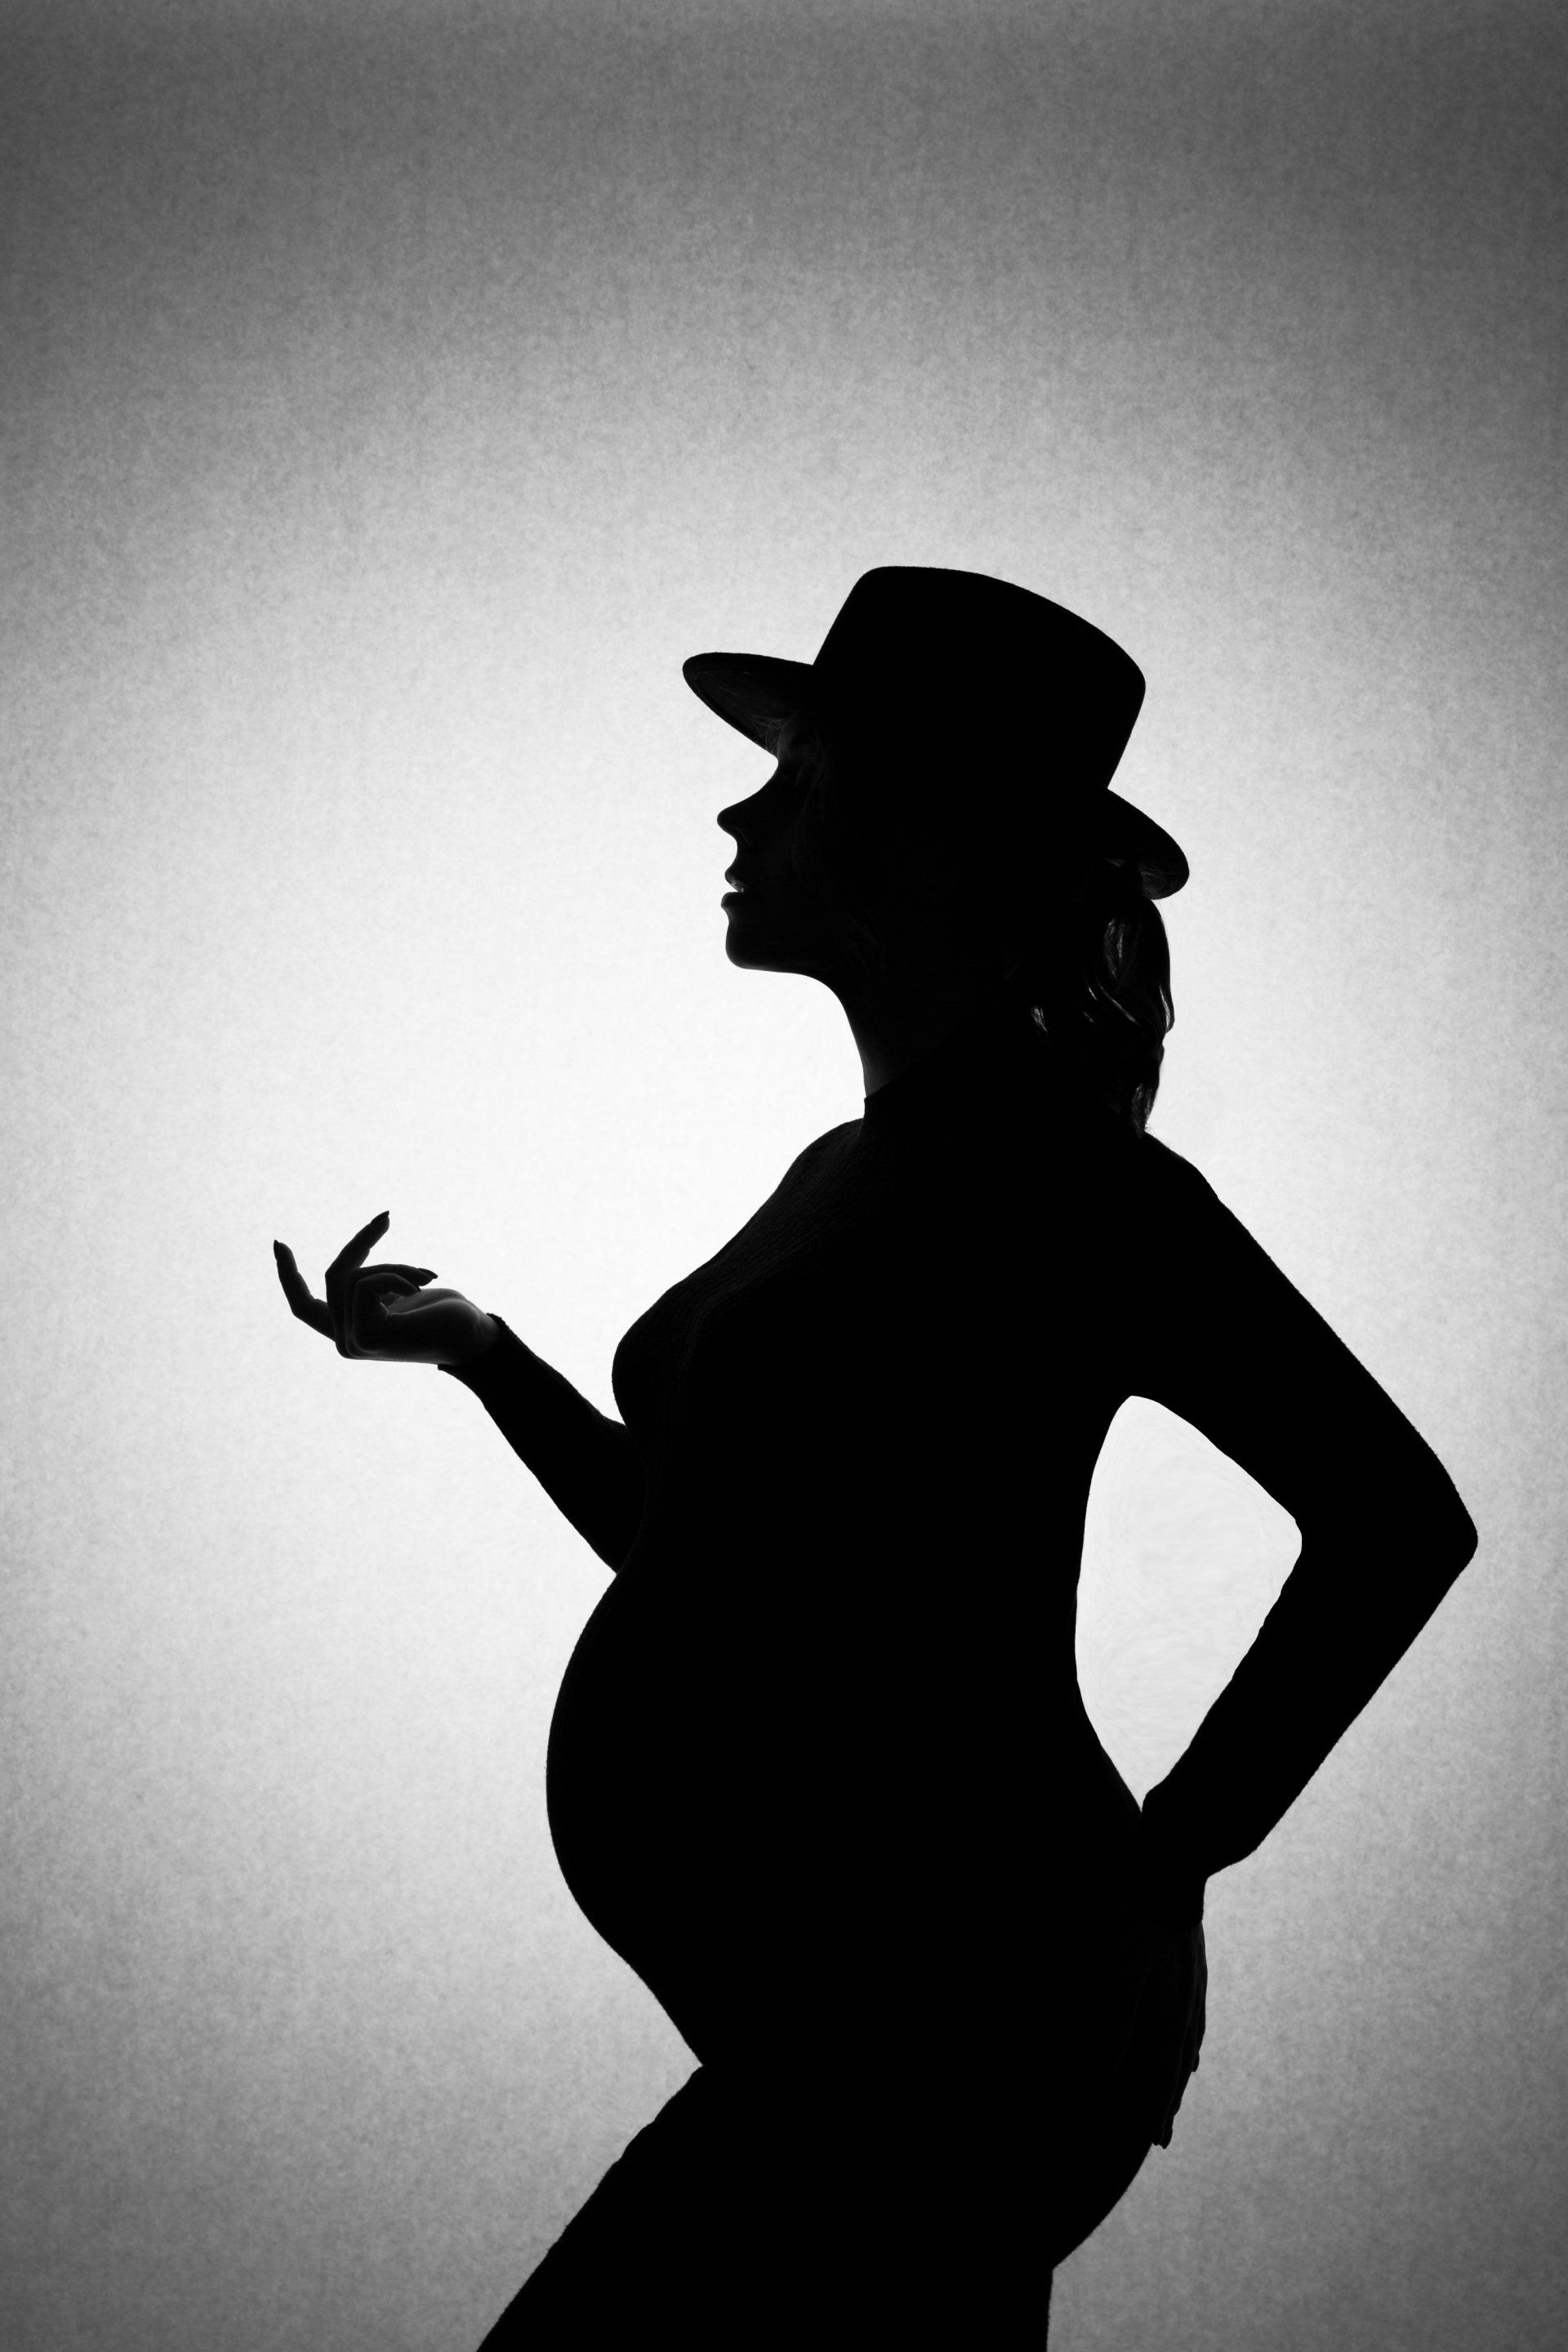 Een zwangere vrouw tijdens een zwangerschapsshoot